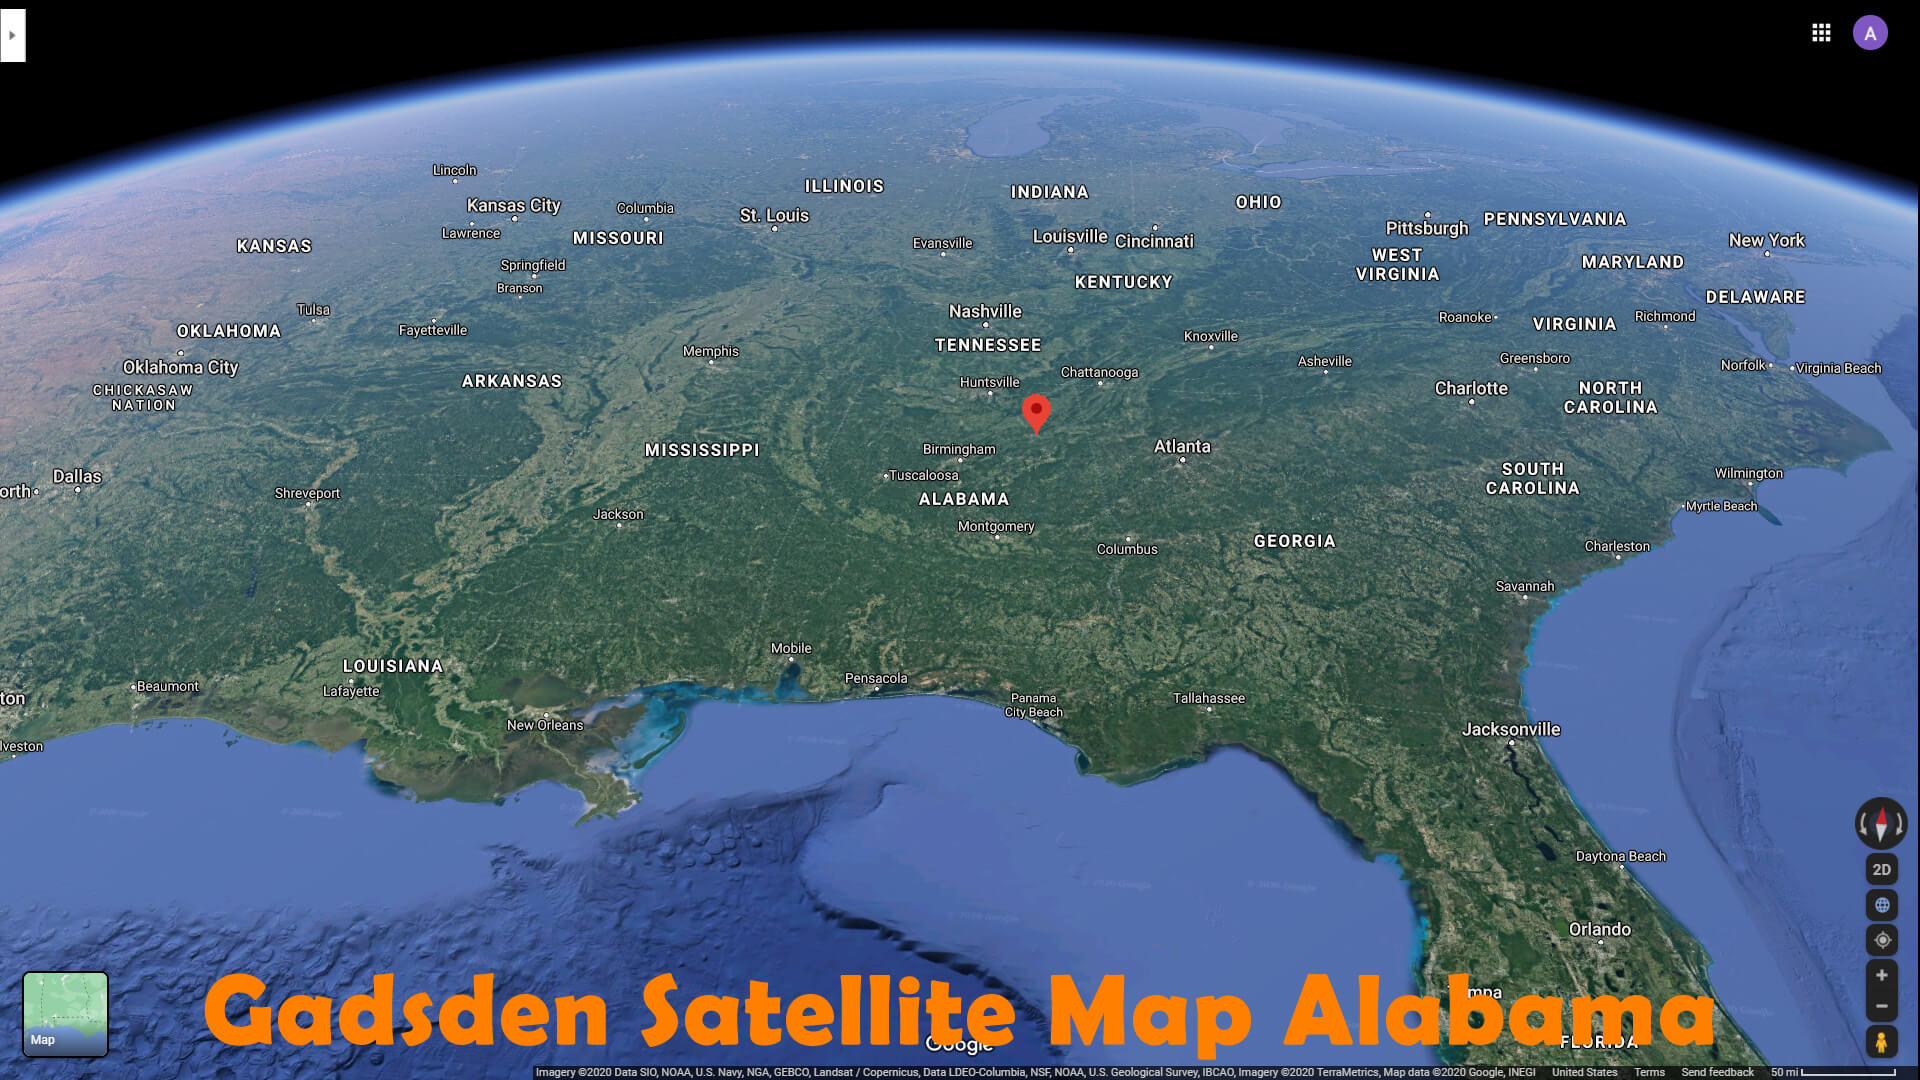 Gadsden Satellite Carte Alabama